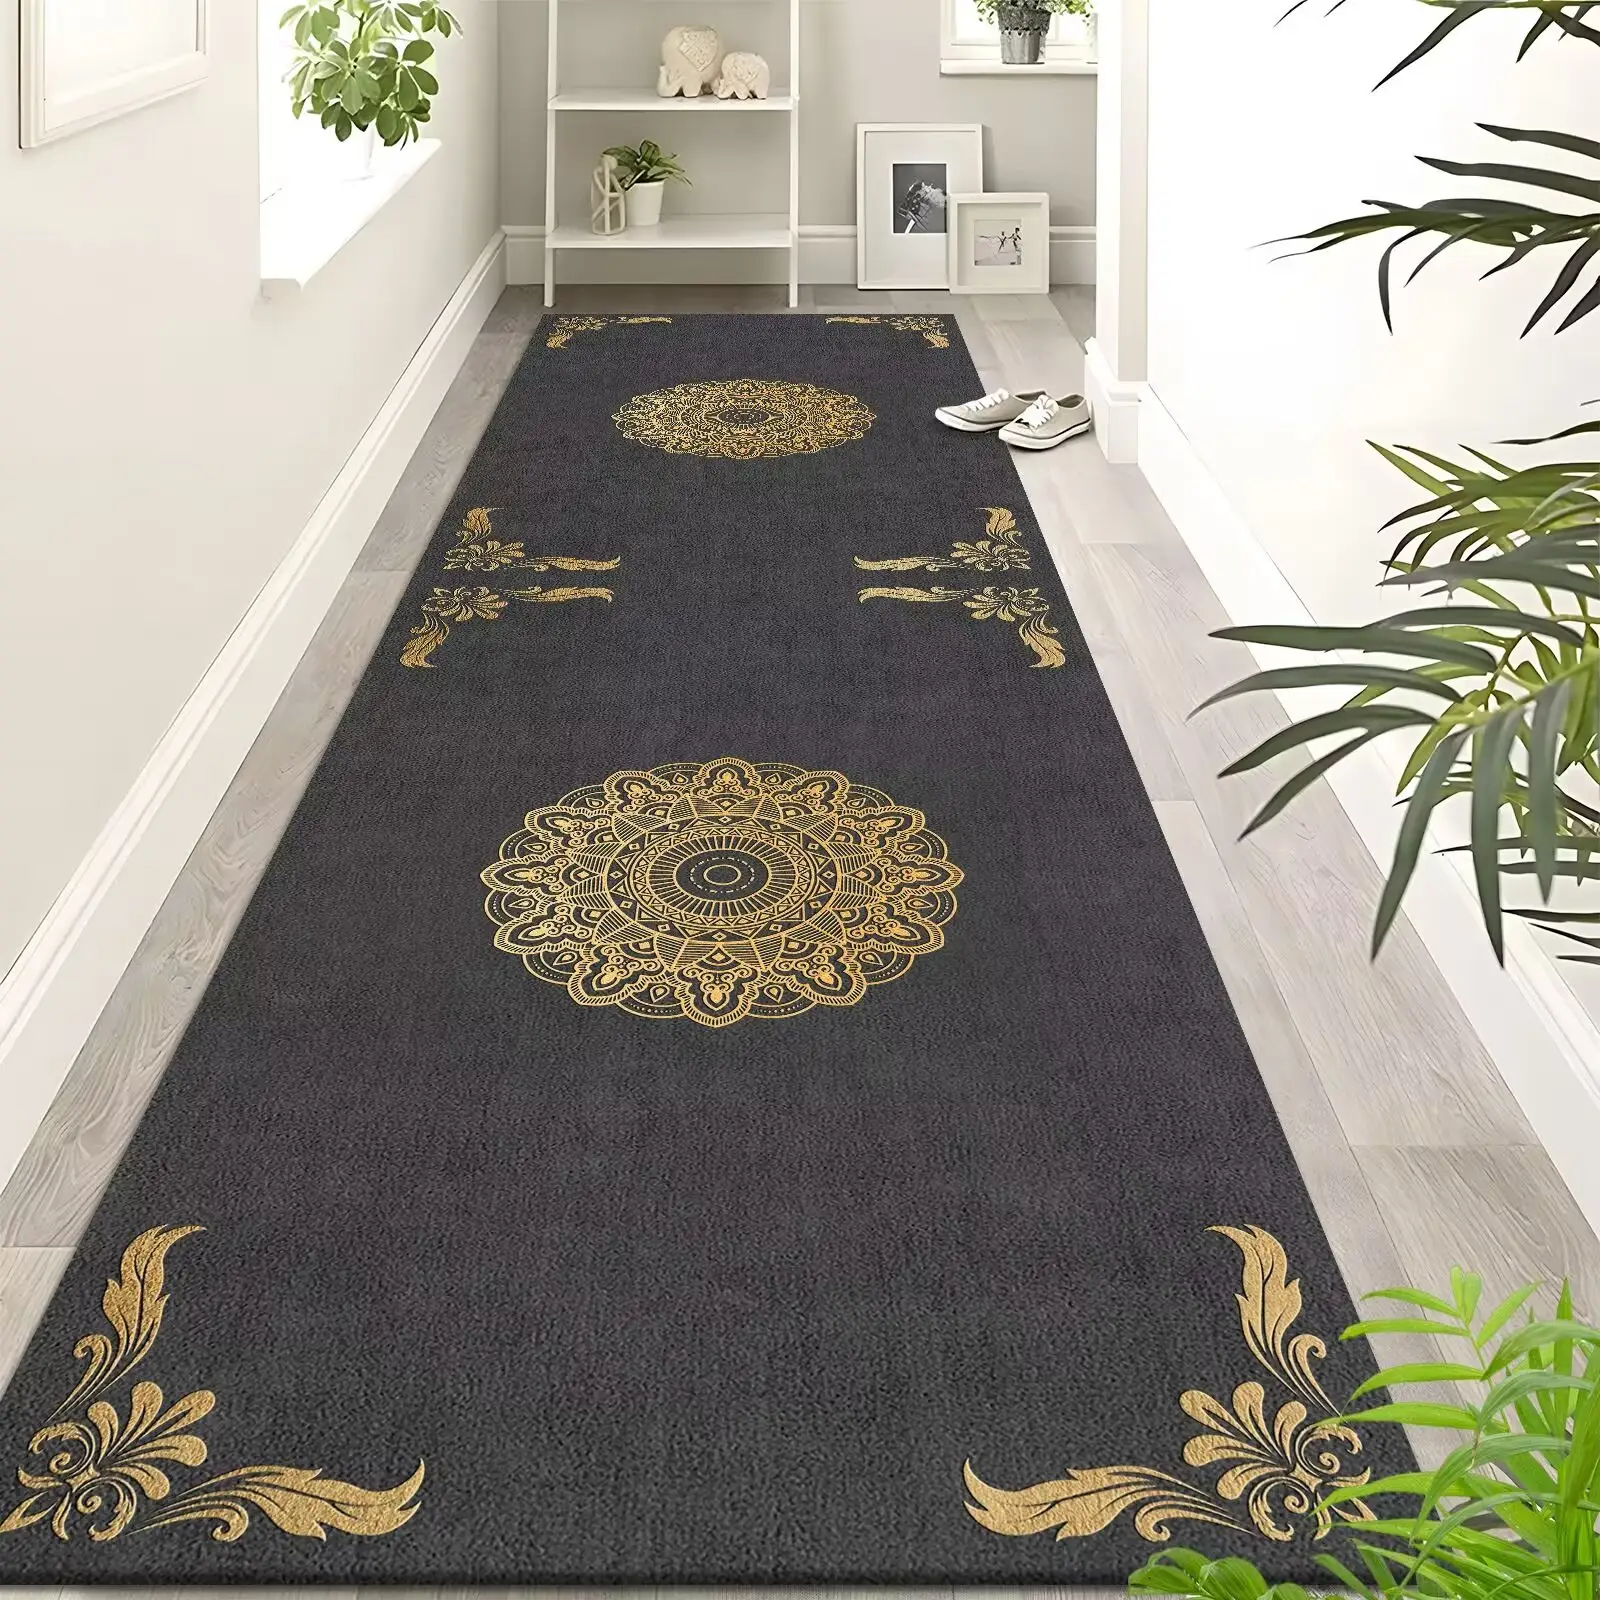 שטיח פו קשמיר הוא שטיח אישי, חסכוני ועמיד בפני לכלוך ליד המיטה לשימוש ביתי